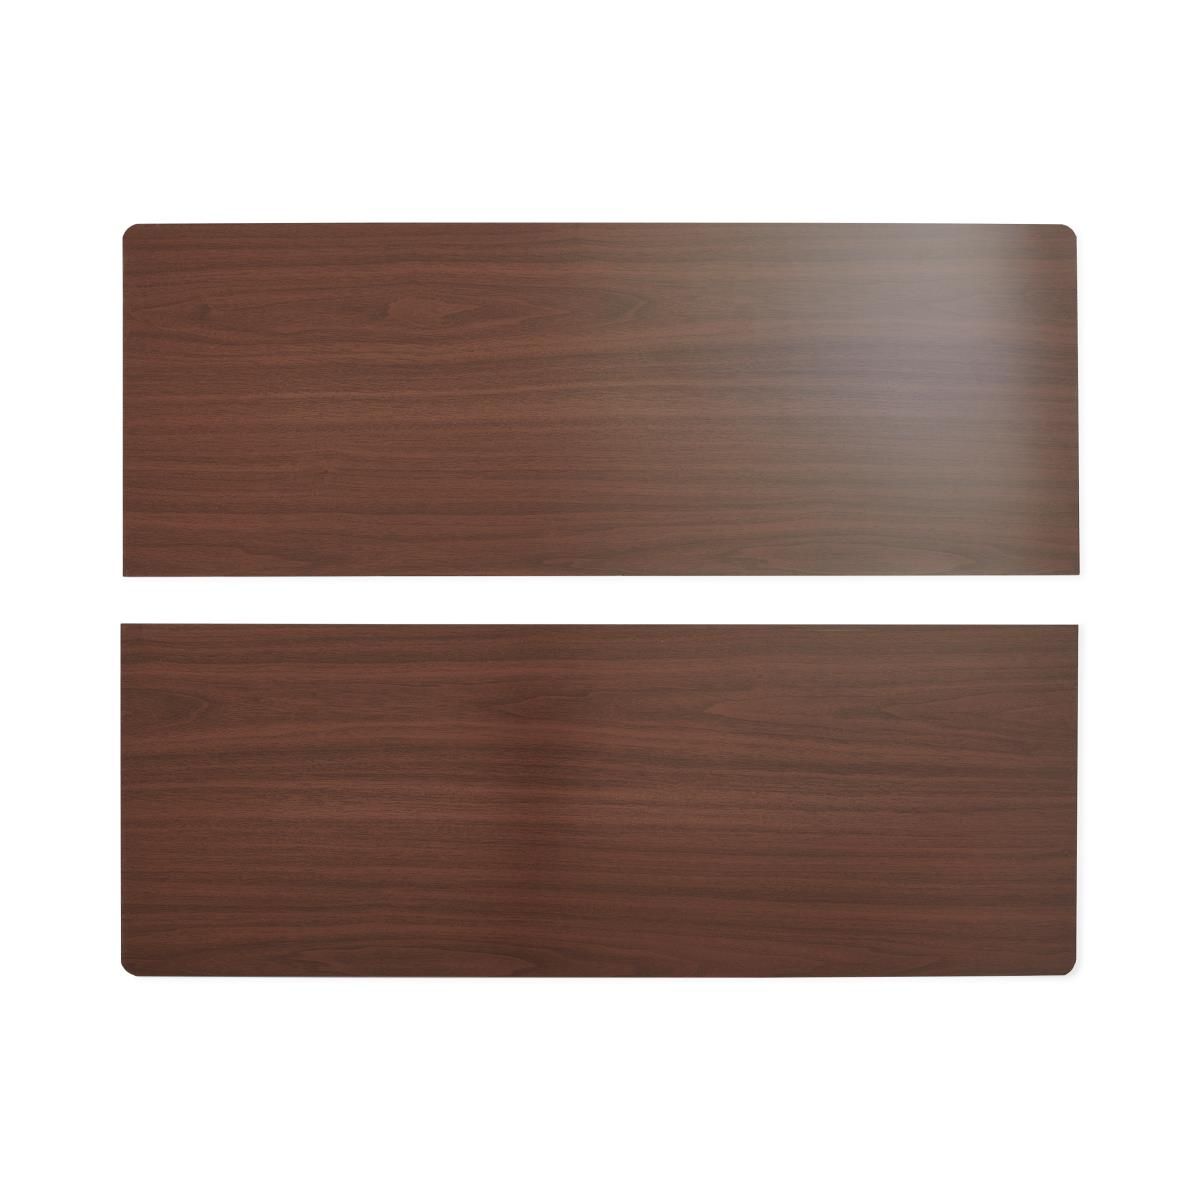 Medline Bariatric Wooden Transfer Board